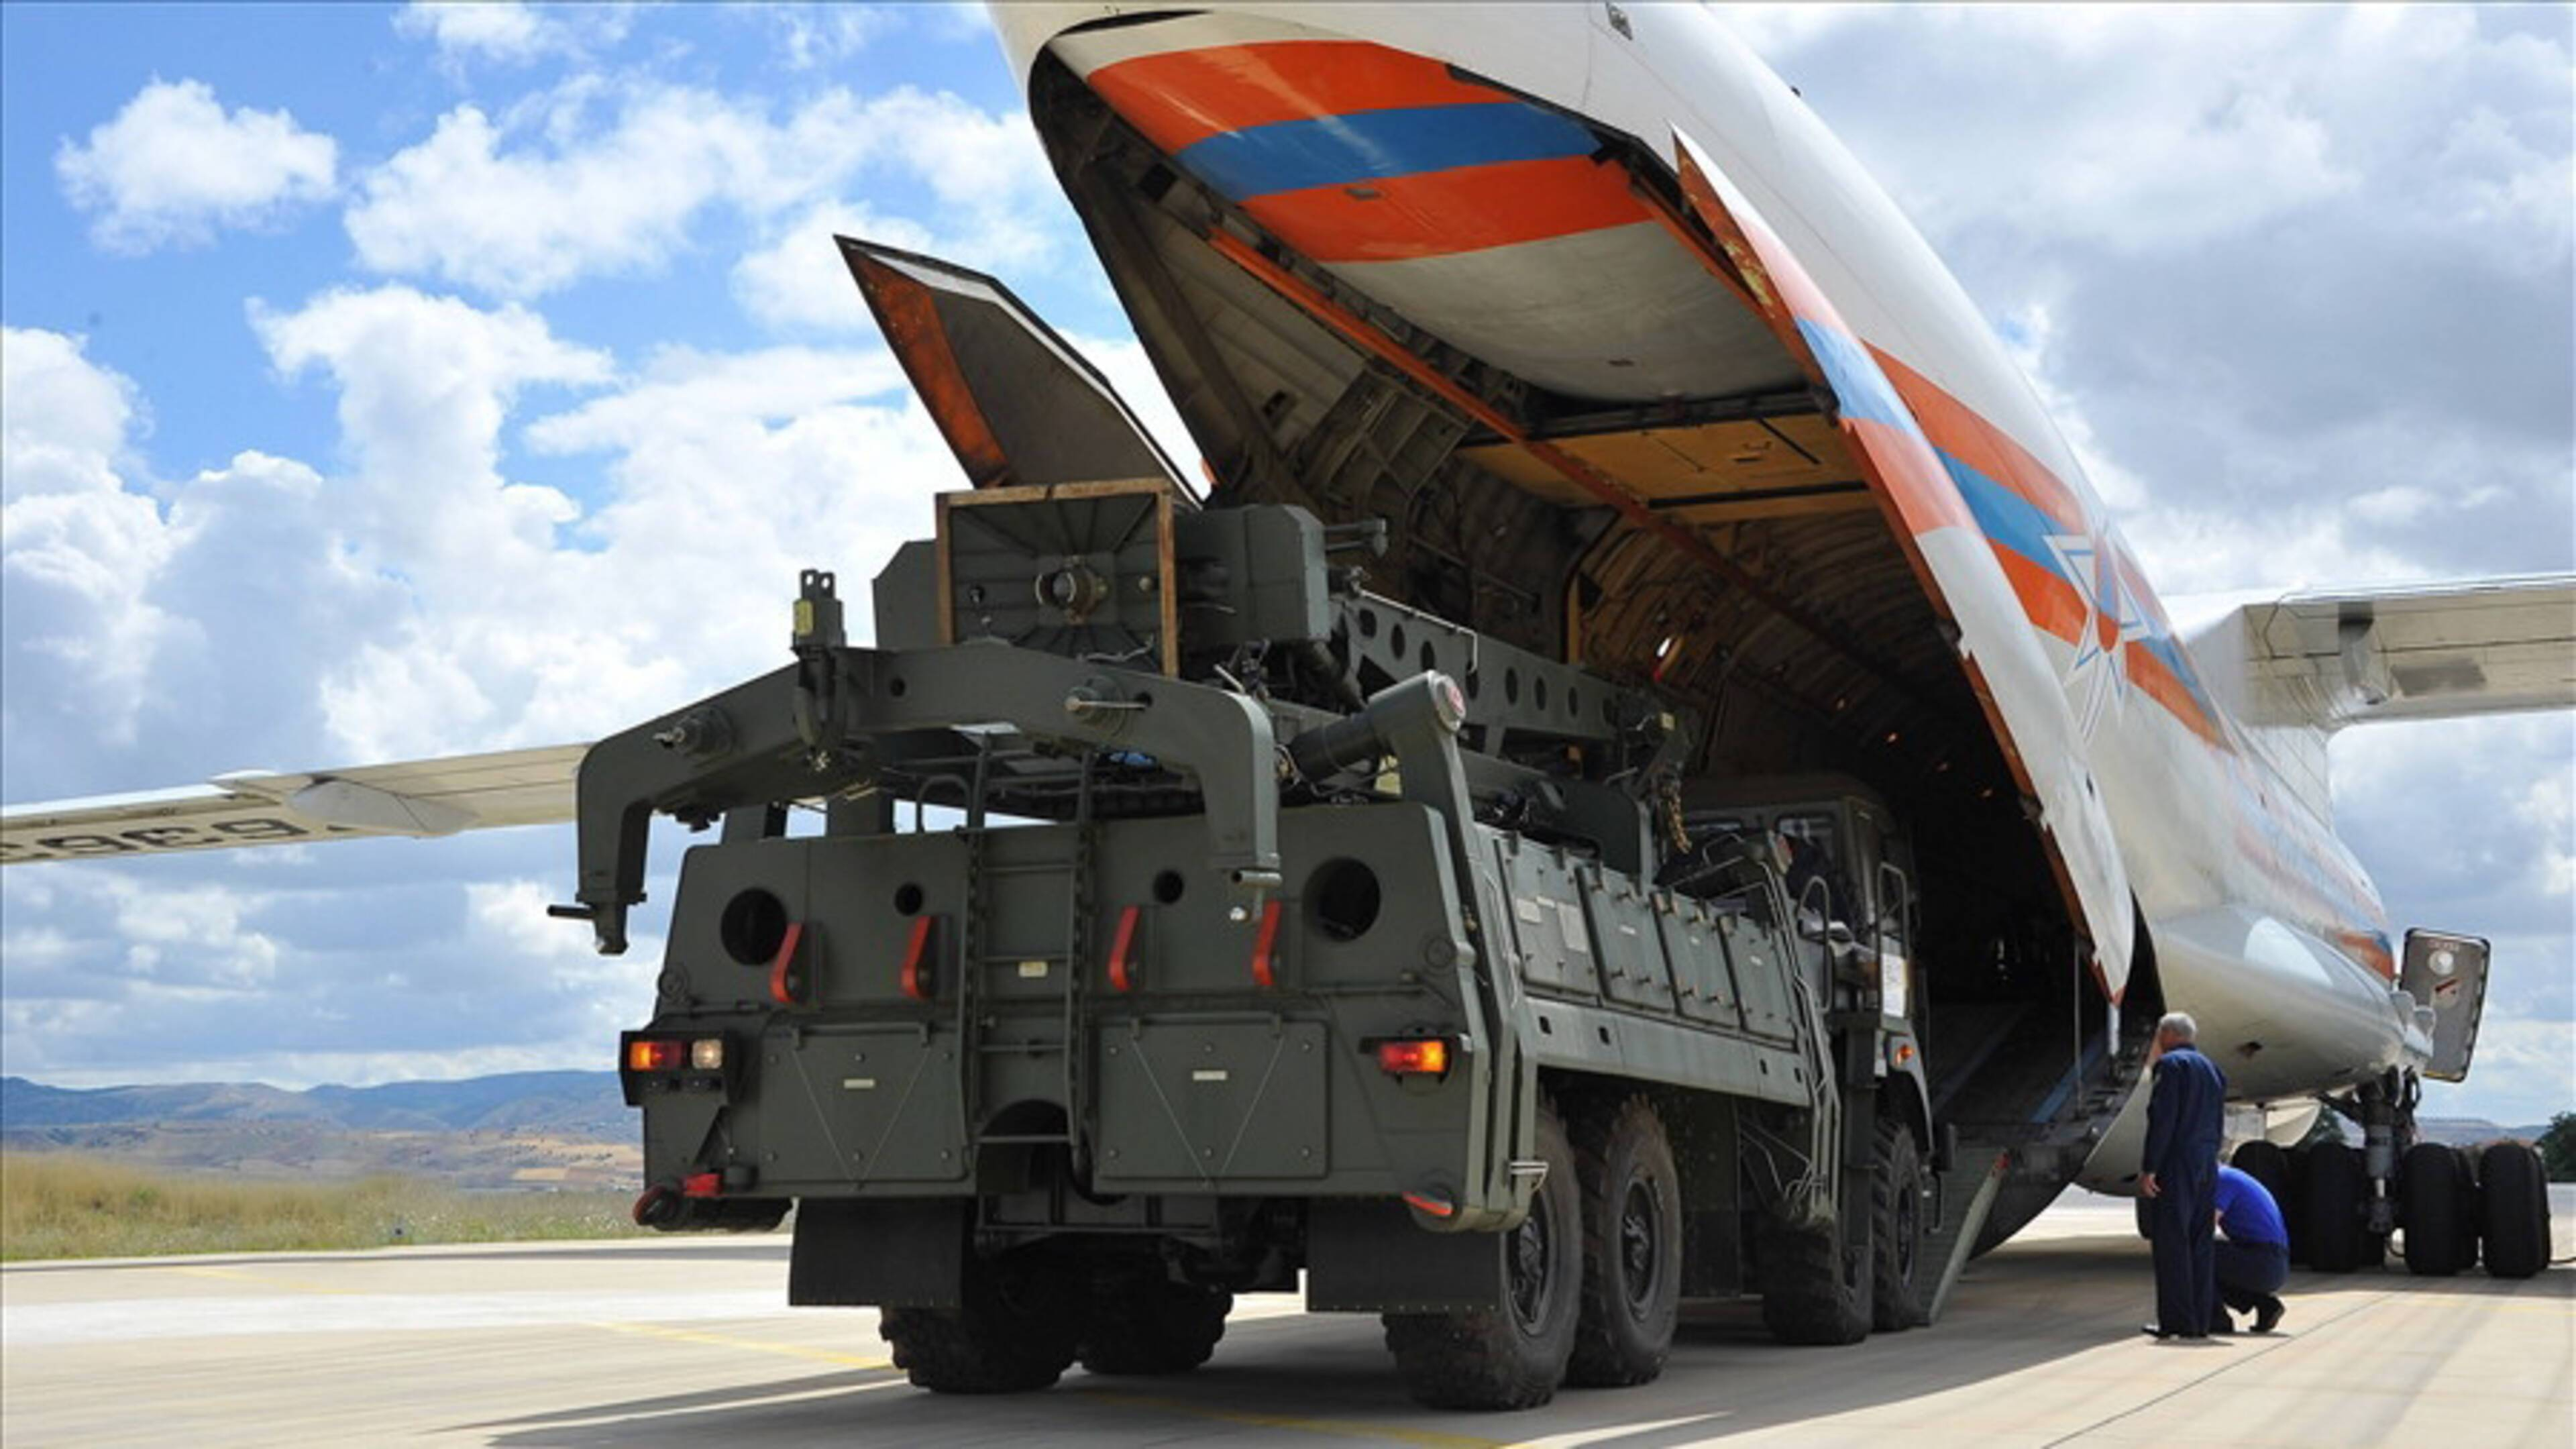 Россия и Турция достигли согласия по поставке второго комплекта С-400